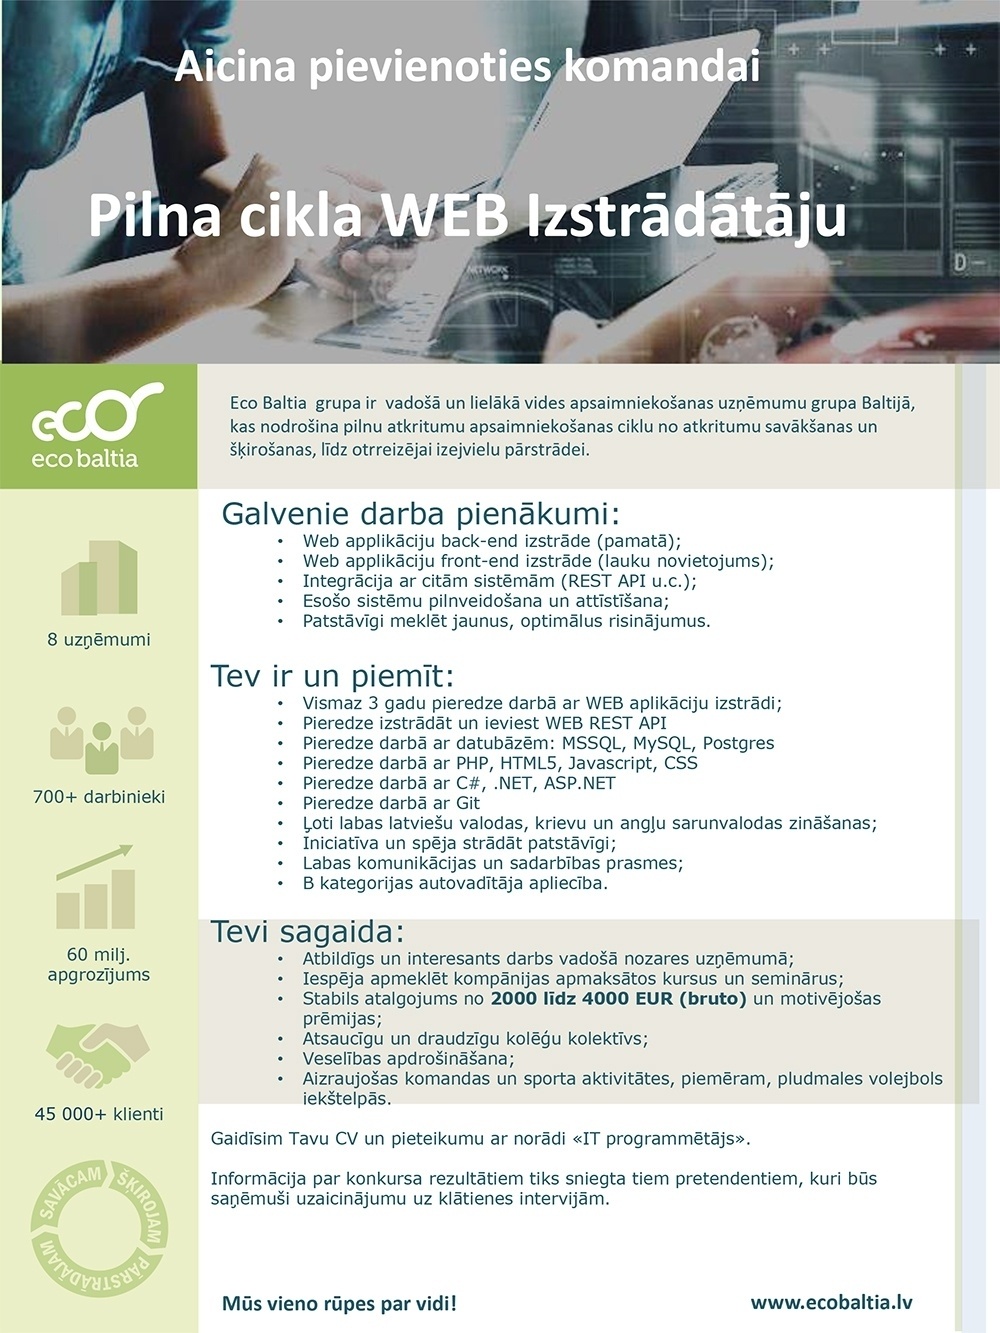 Eco Baltia grupa, SIA Pilna cikla WEB izstrādātājs/-a